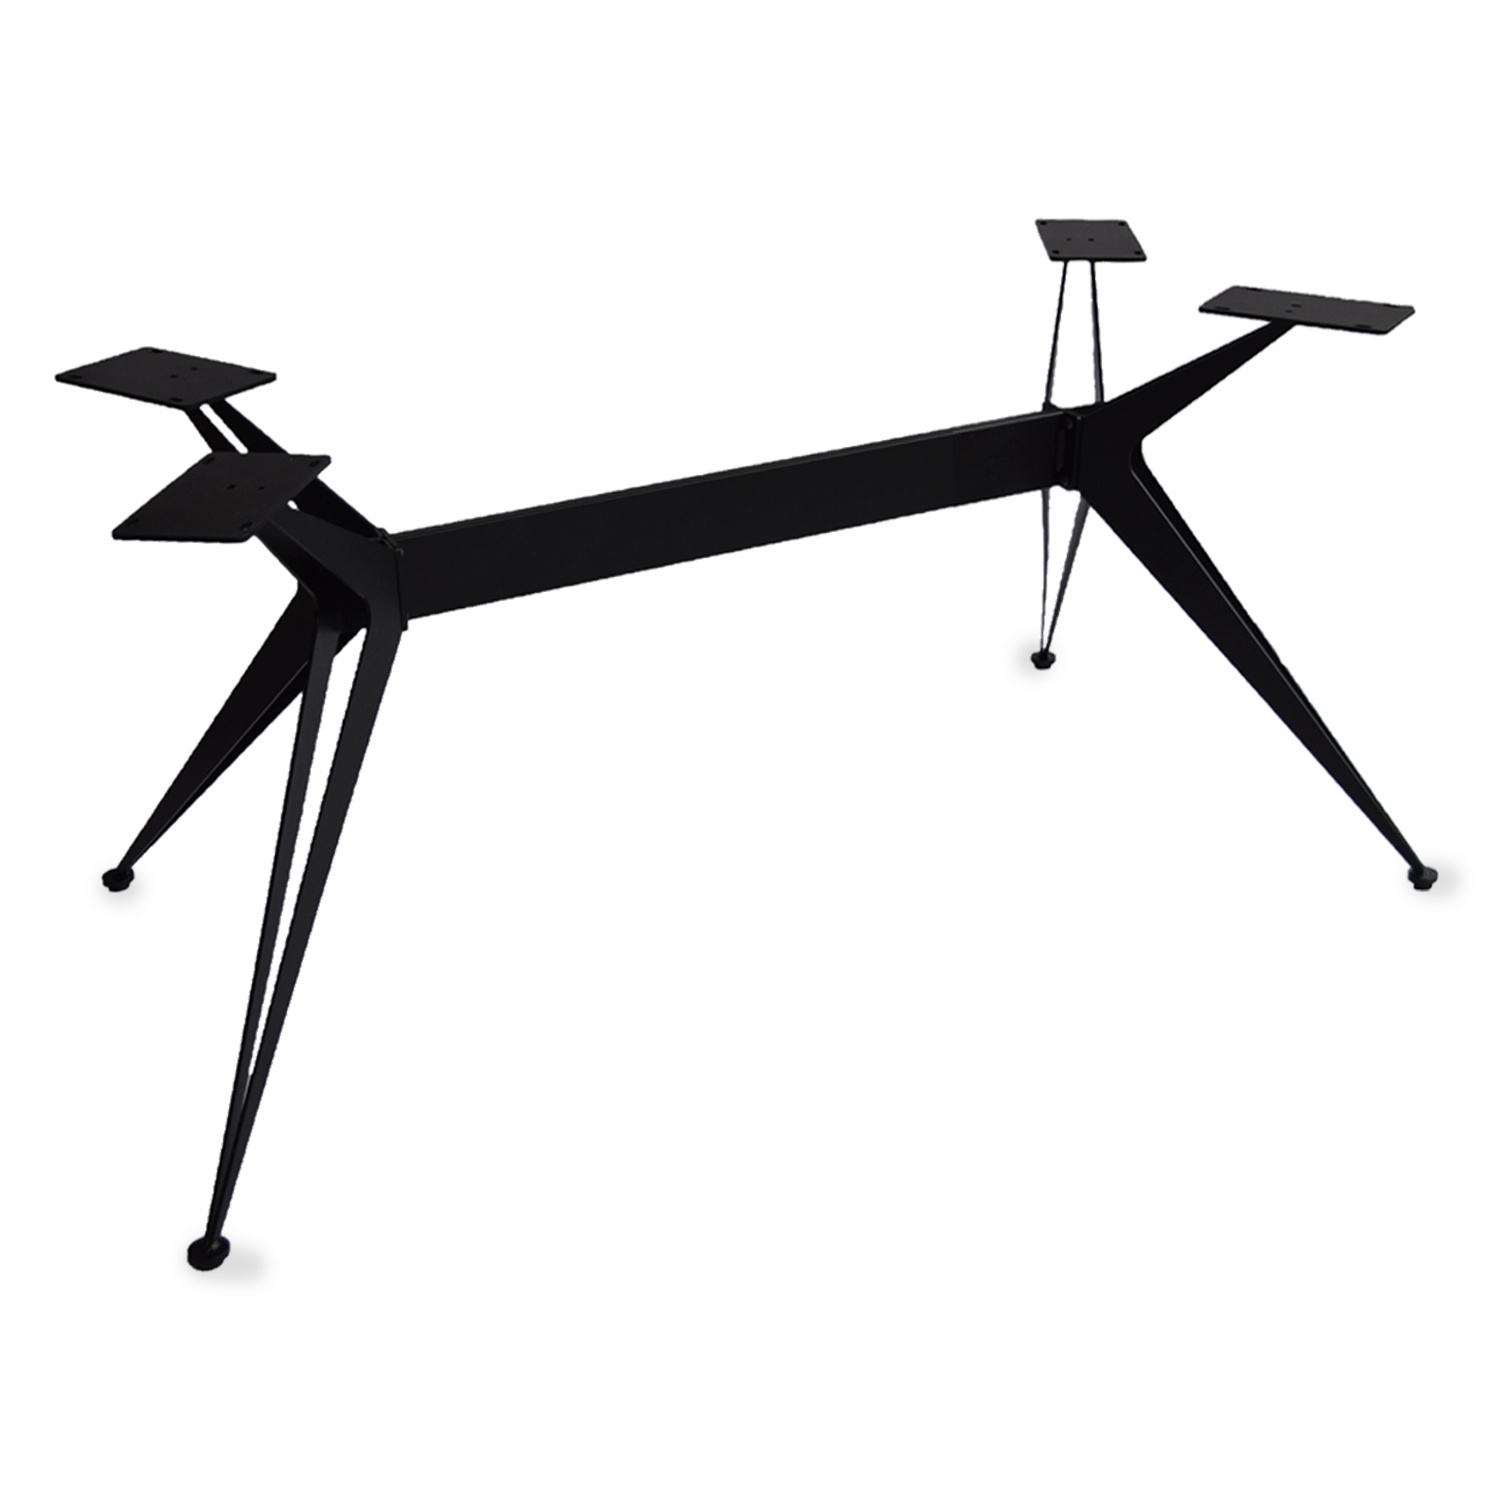  Tischgestell Metall 3D Butterfly Frame schlank - 3-Teilig - 2x2 cm - 90x190 cm - 72cm hoch - Stahl Tischuntergestell - Rechteck - Beschichtet - Schwarz